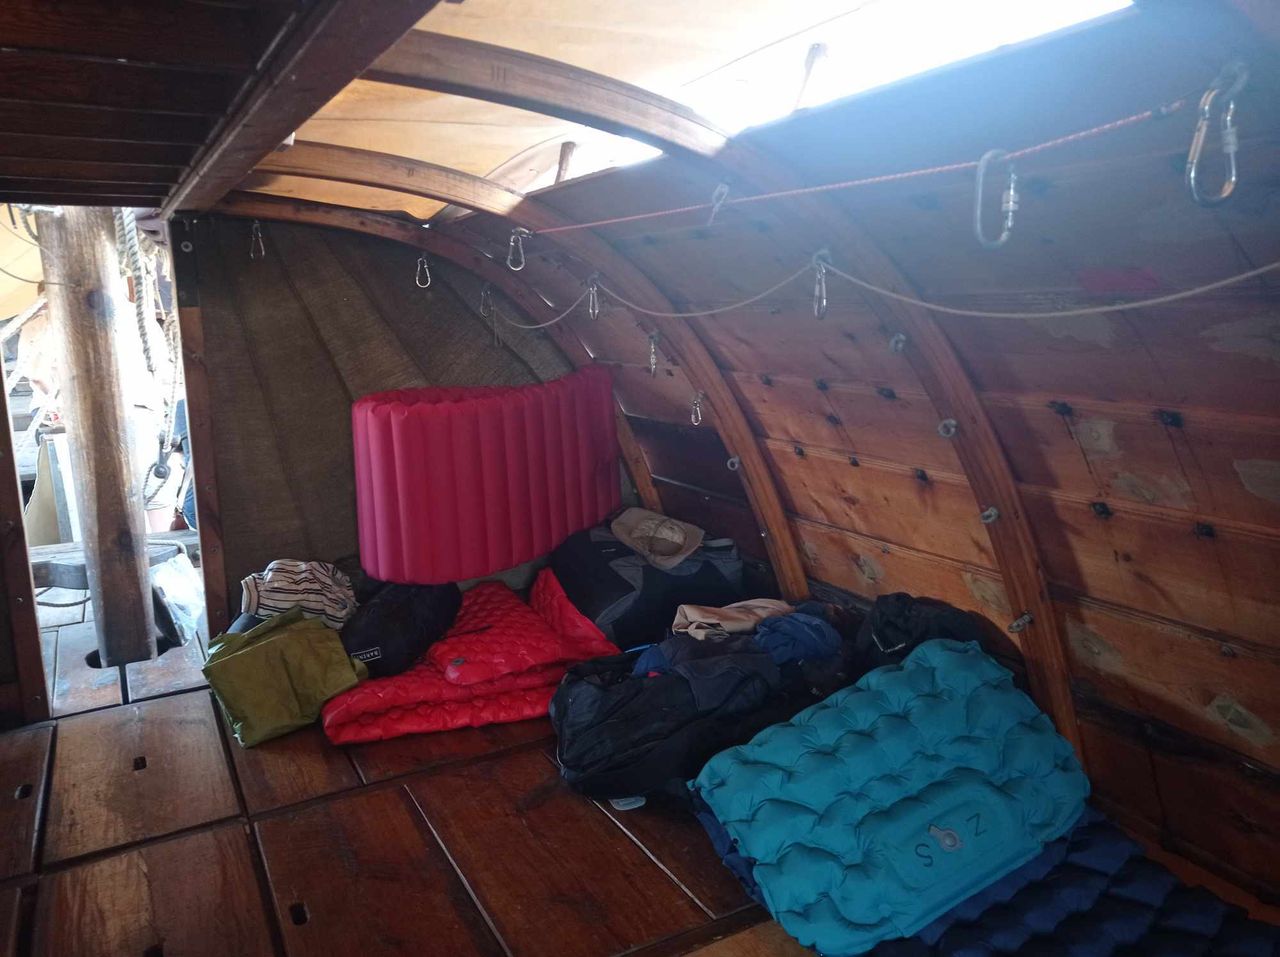 Εικόνα από το εσωτερικό του σκάφους- κάποιοι προτιμούν βέβαια να κοιμούνται έξω, κάτω από τα άστρα